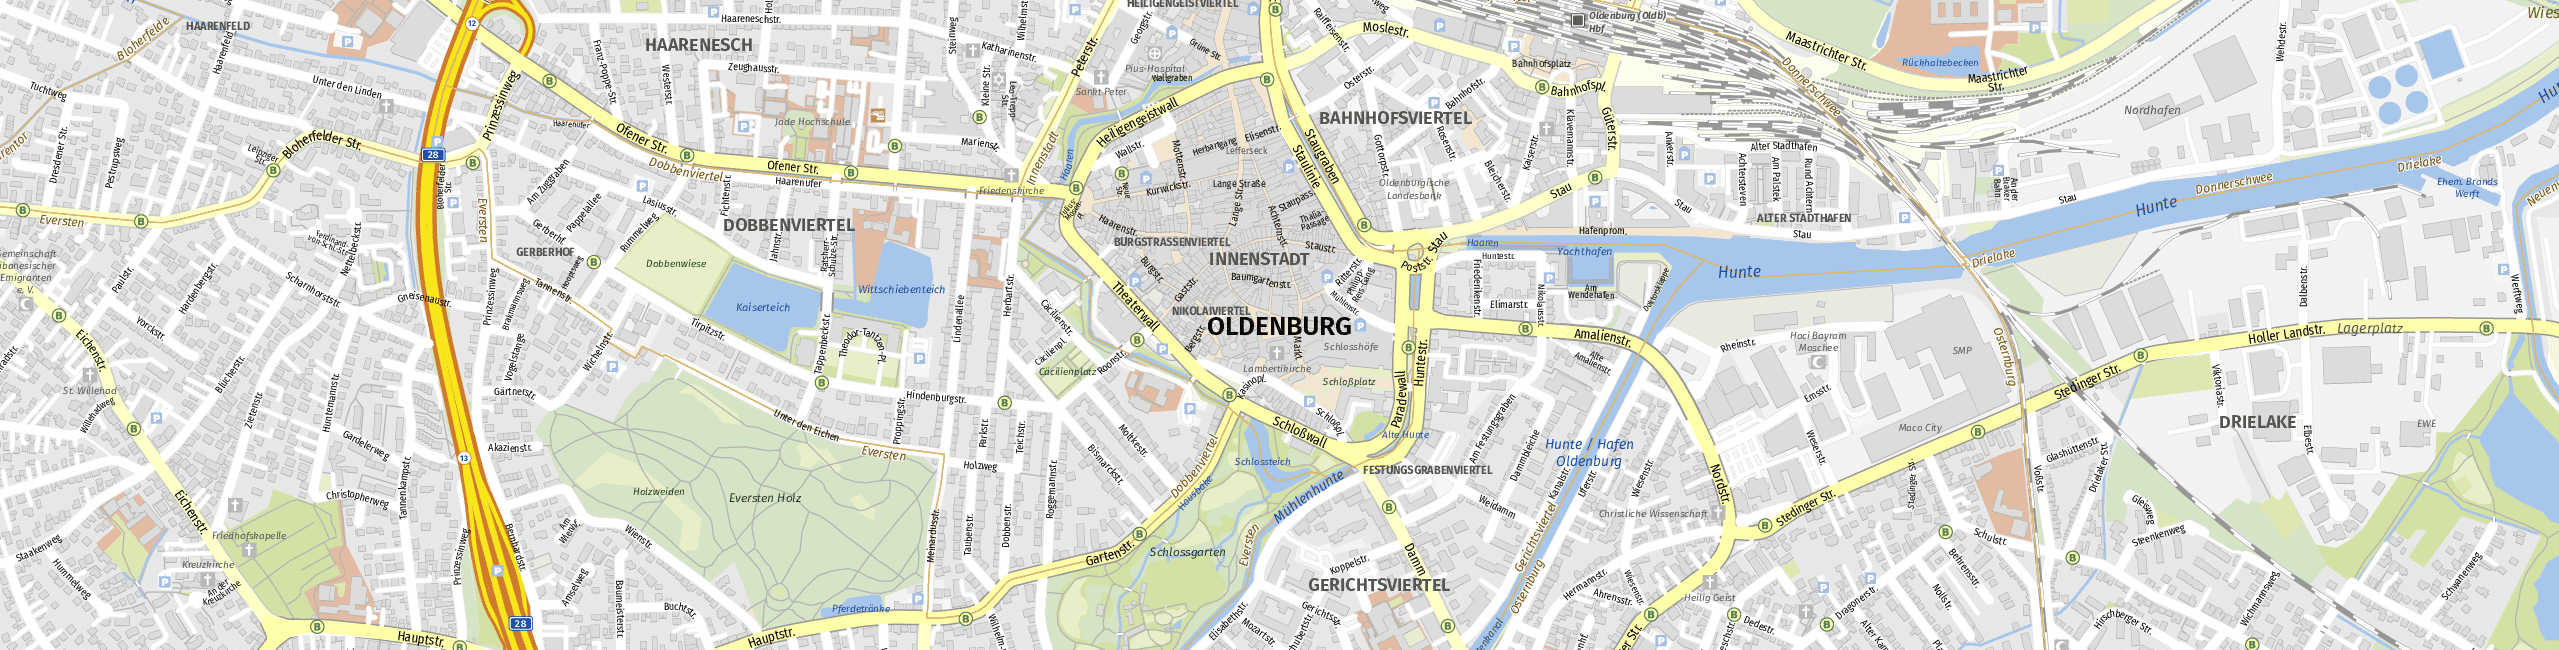 Stadtplan Oldenburg zum Downloaden.